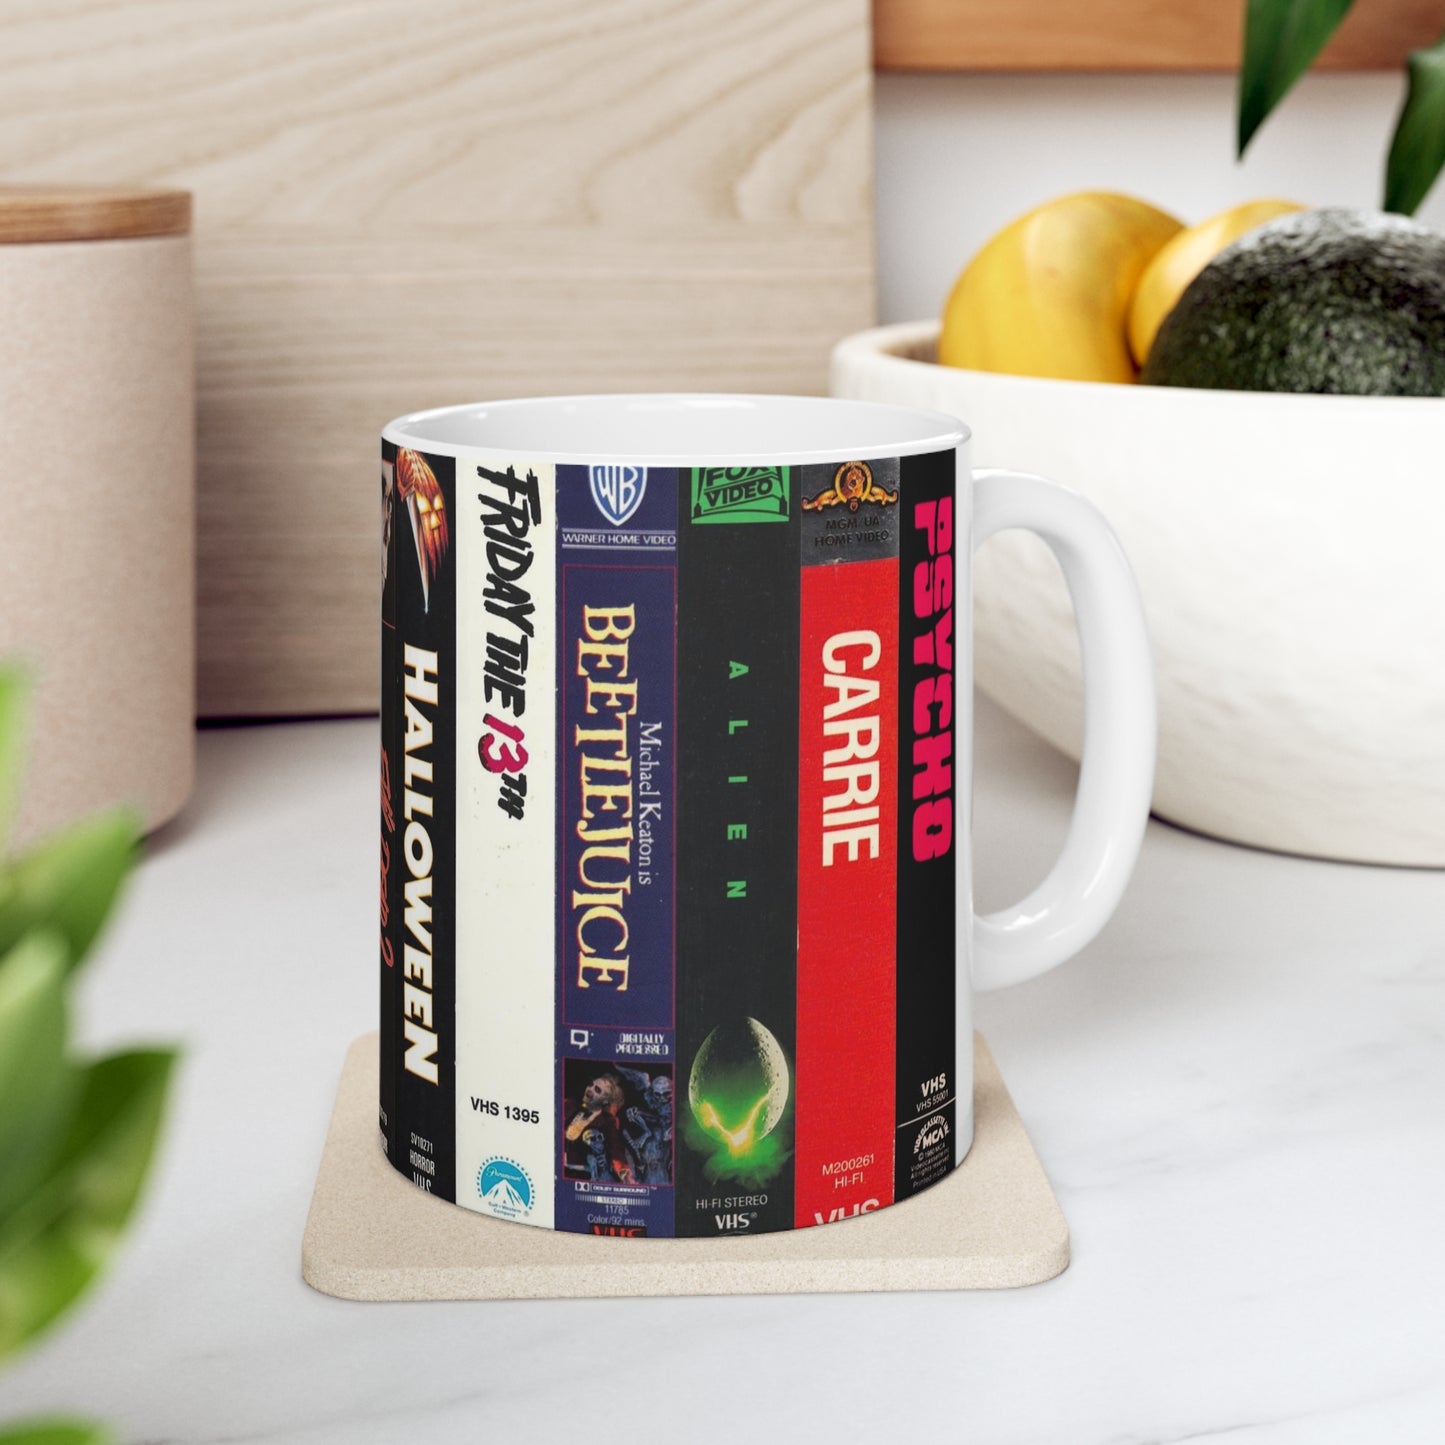 VHS Collection Mug